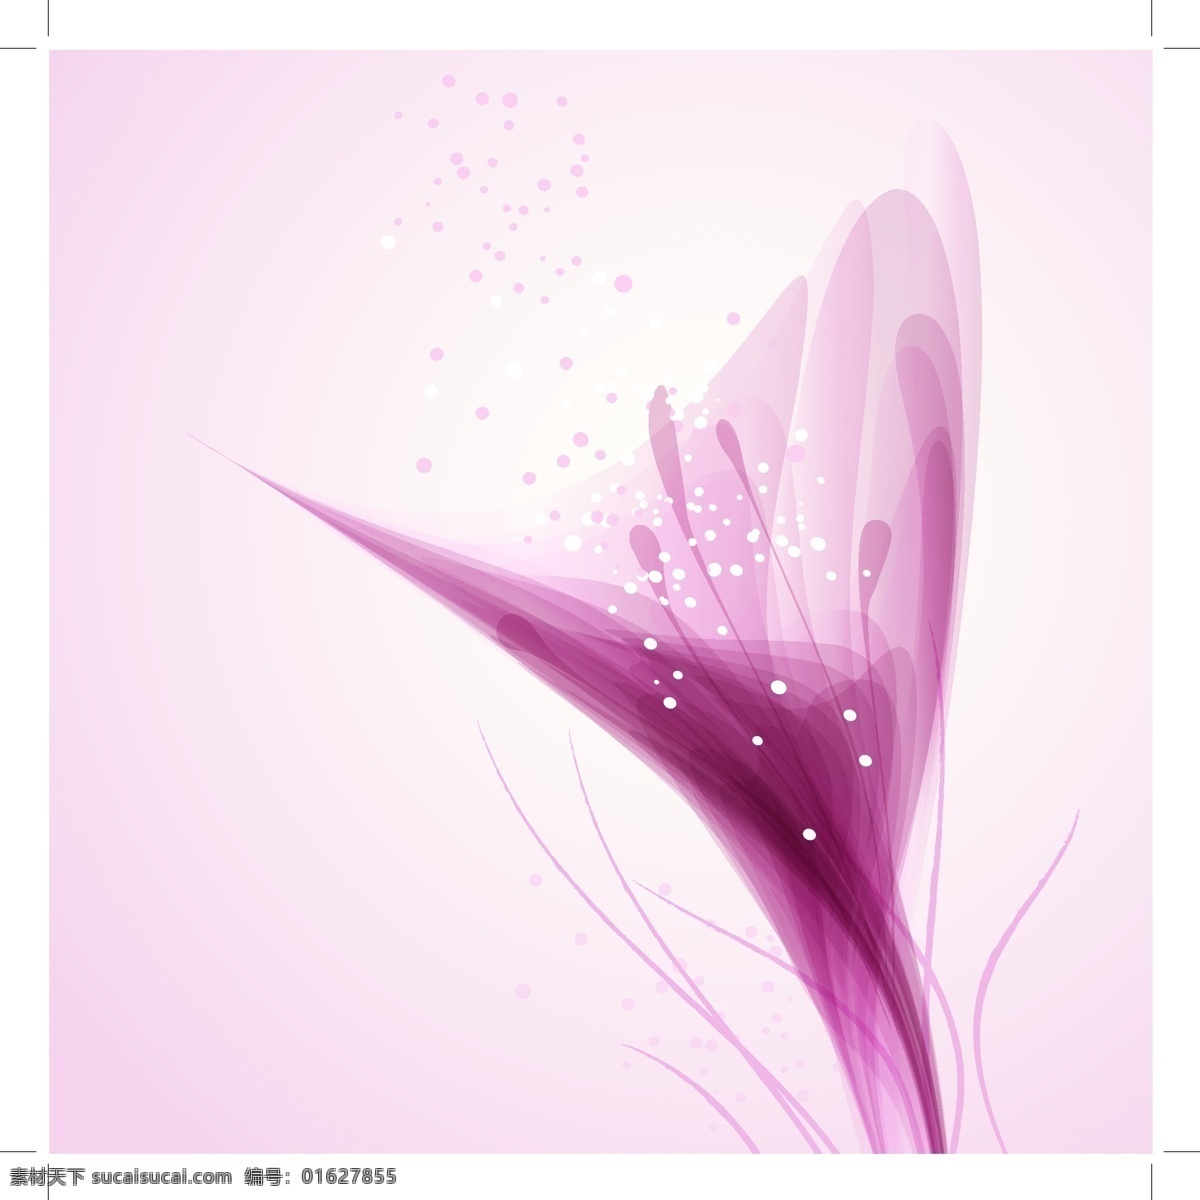 紫色 线条 花卉 矢量 矢量素材 设计素材 背景素材